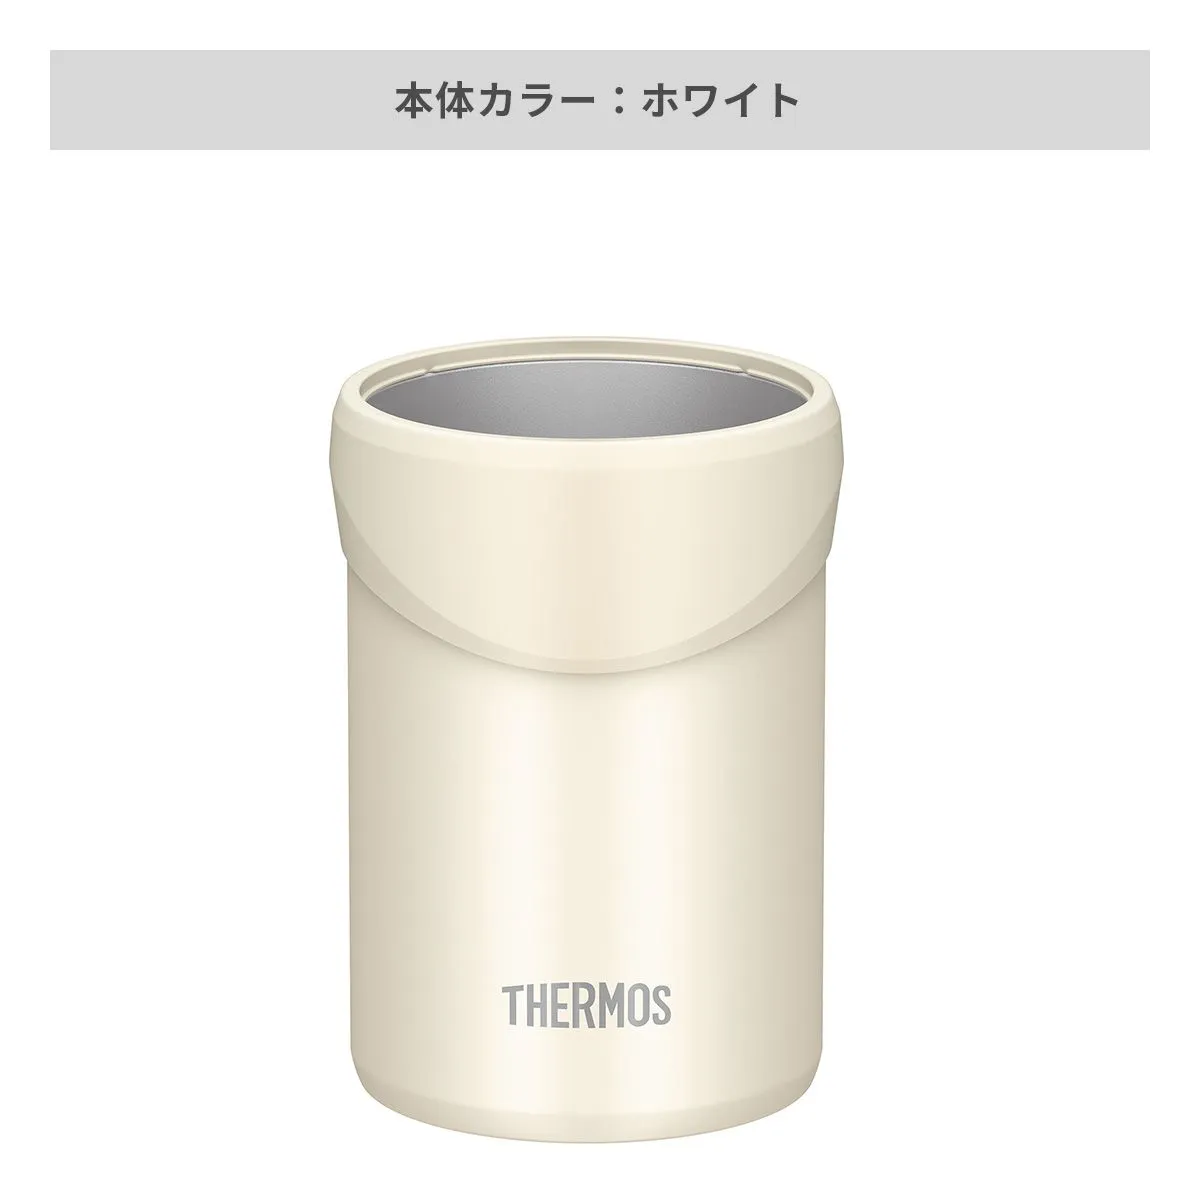 サーモス 保冷缶ホルダー 350ml缶用 【オリジナル缶ホルダー / 回転